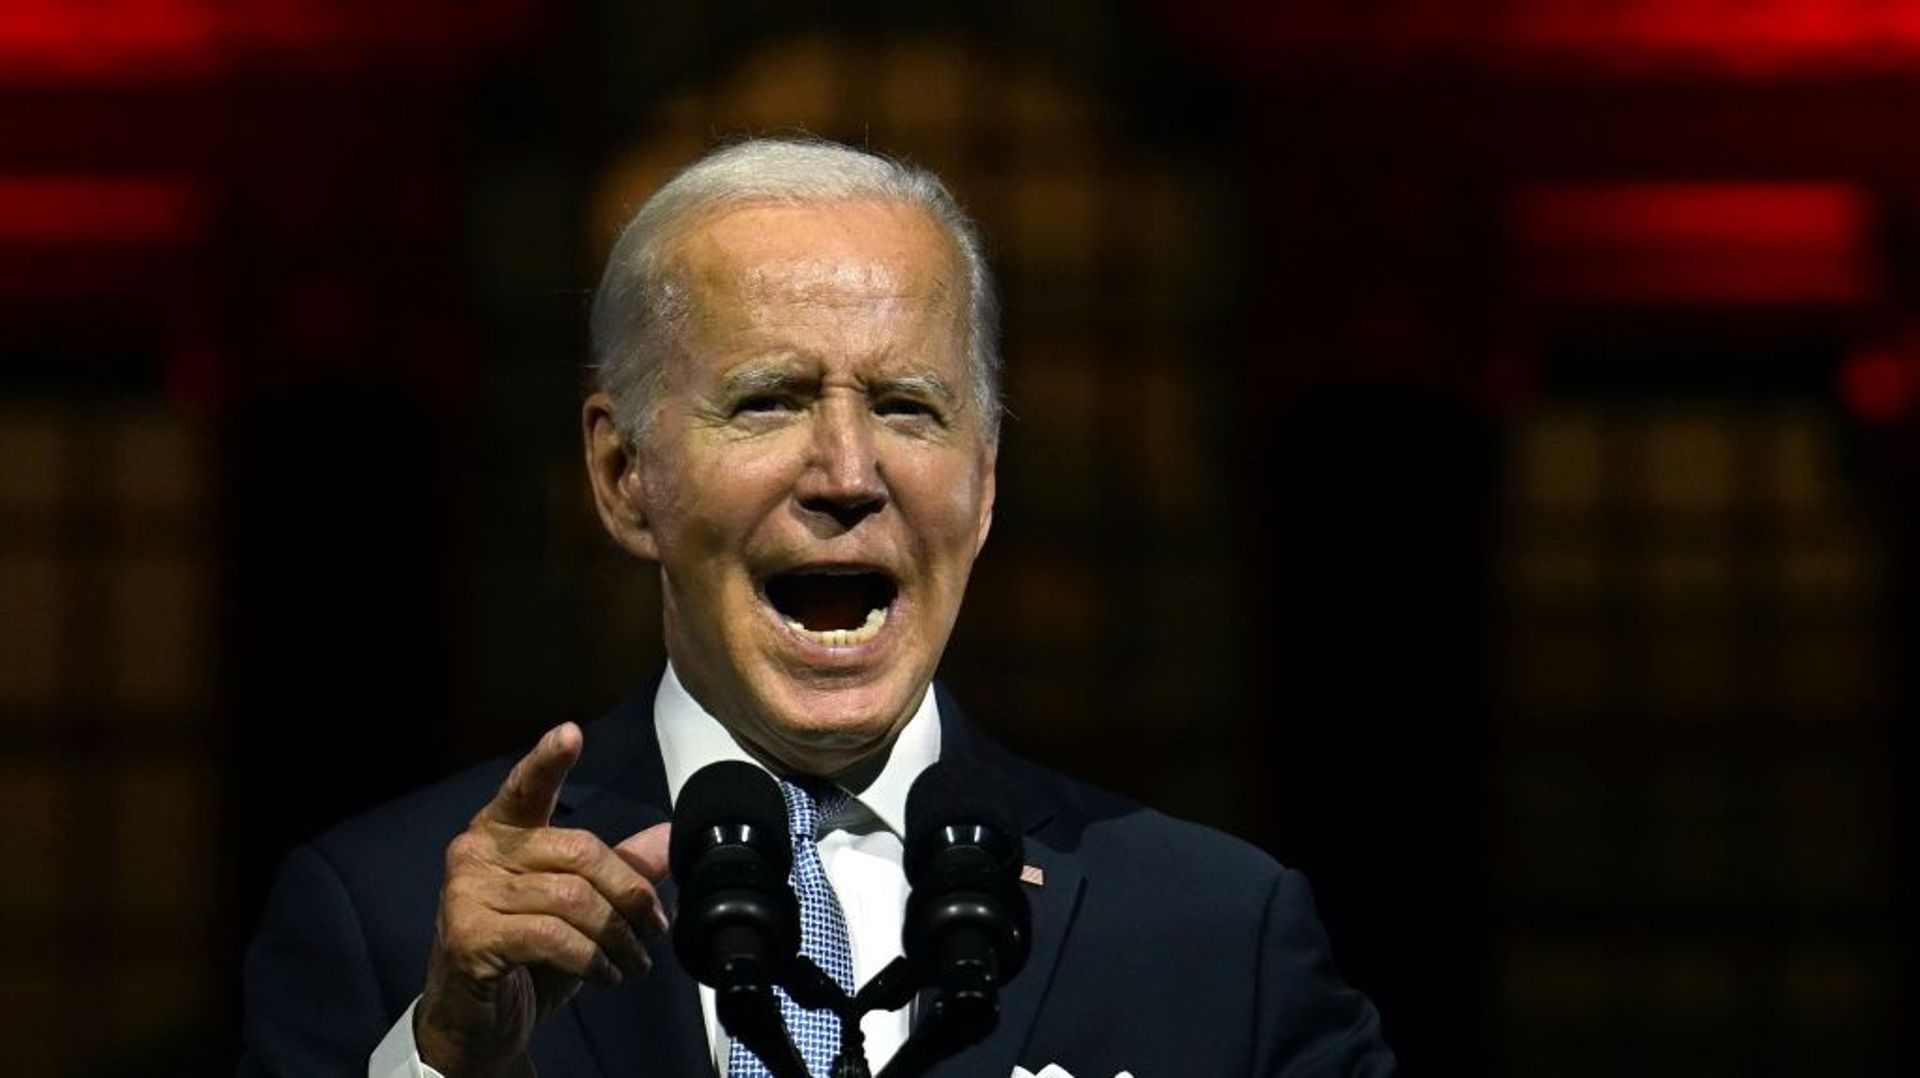 Le président américain Joe Biden lors d'un discours à l'Independence Hall de Philadelphie, le 1er septembre 2022 en Pennsylvanie 